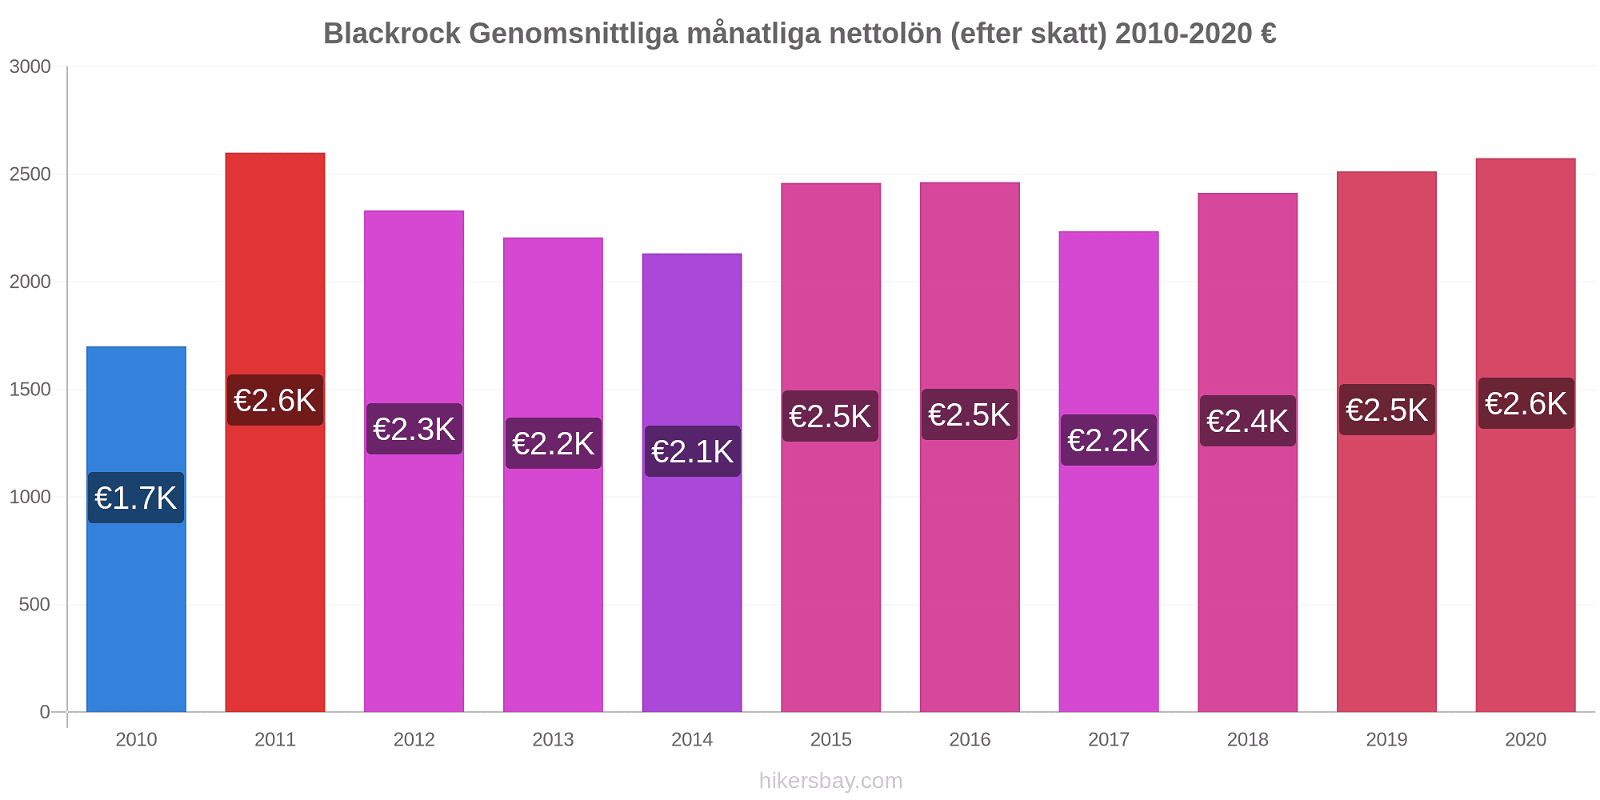 Blackrock prisförändringar Genomsnittliga månatliga nettolön (efter skatt) hikersbay.com